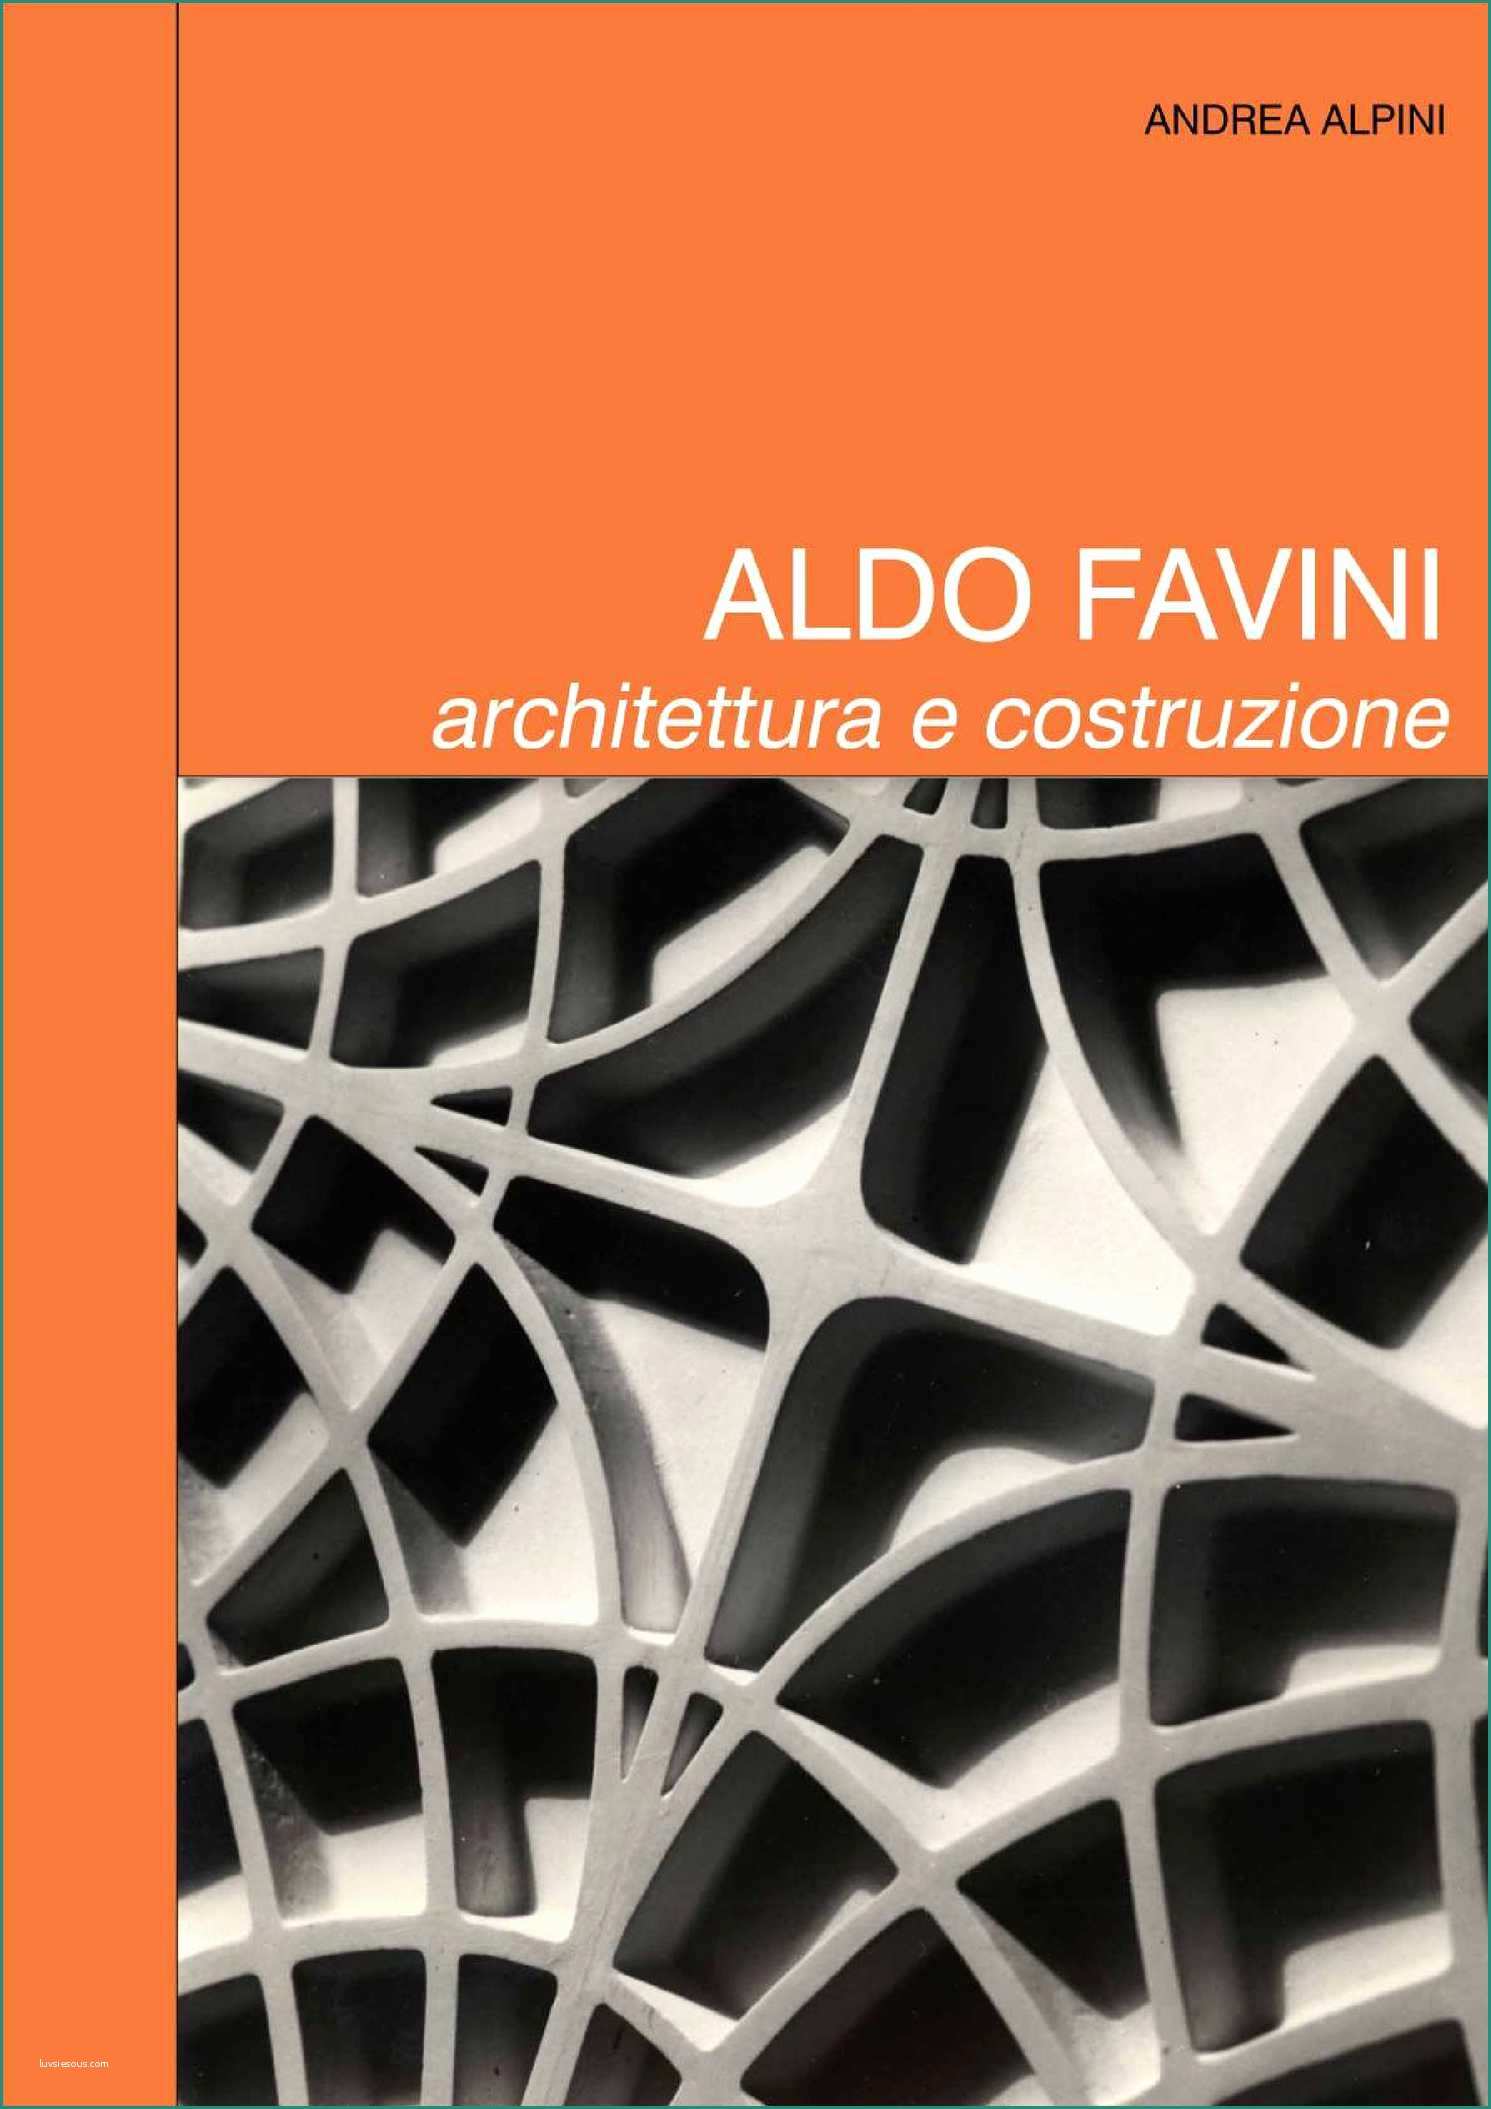 Alvar Aalto Sedie E Calaméo andrea Alpini Aldo Favini Architettura E Ingegneria In Opera